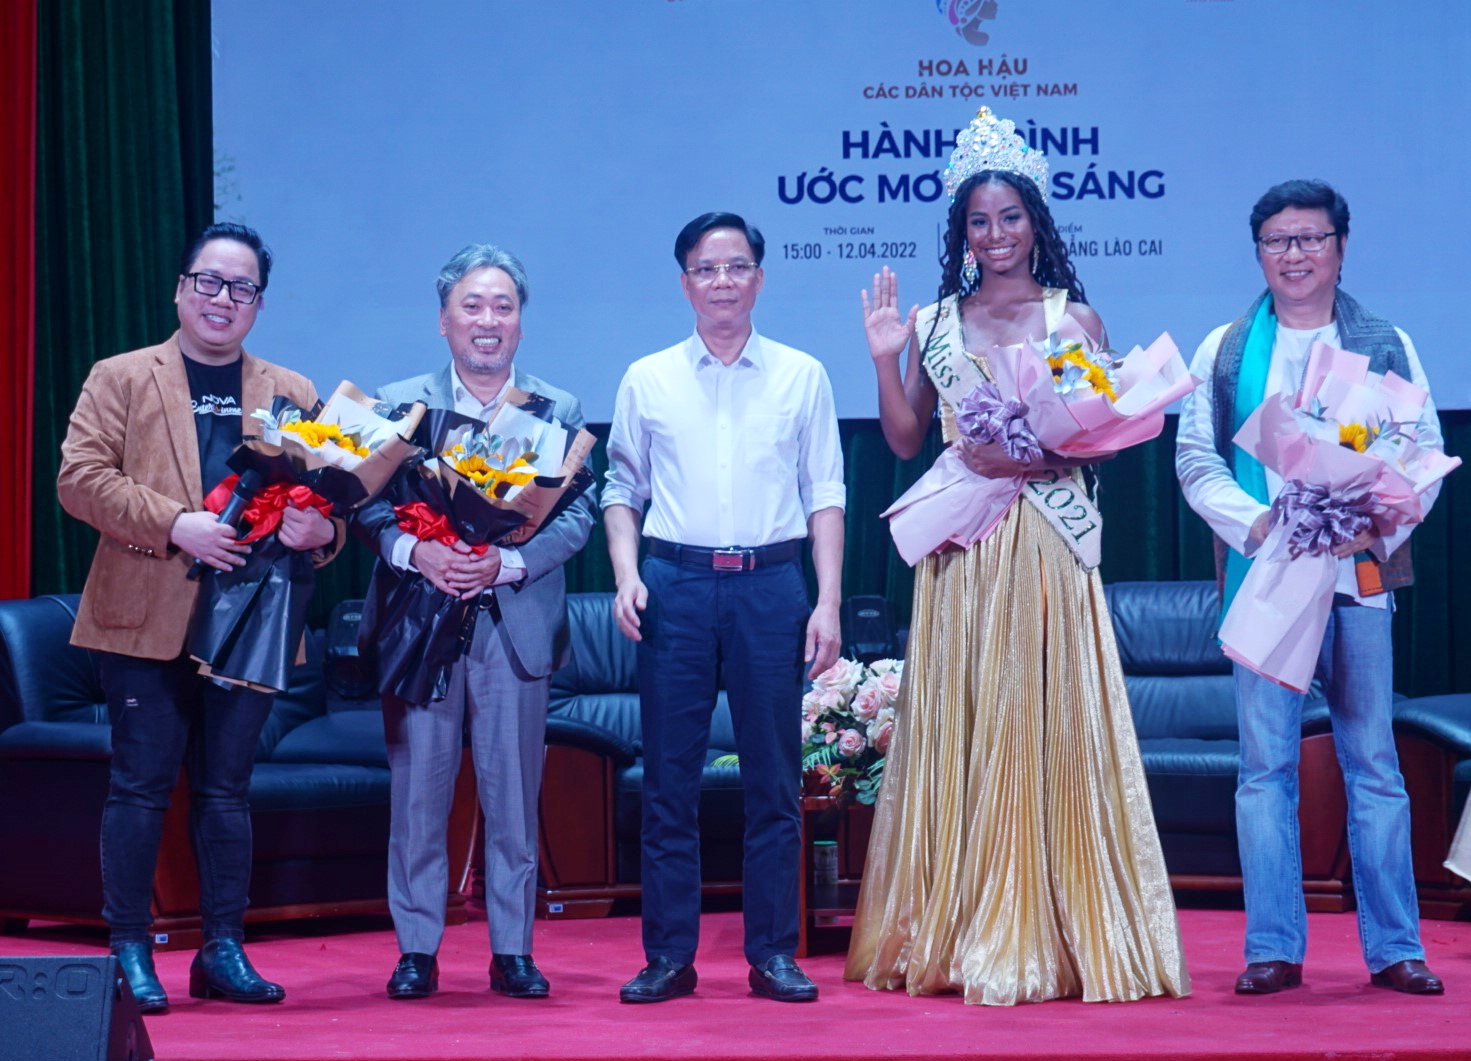 Ông Hoàng Quang Đạt (đứng giữa), Hiệu trưởng Trường Cao đẳng Lào Cai tặng hoa cho các vị khách mời